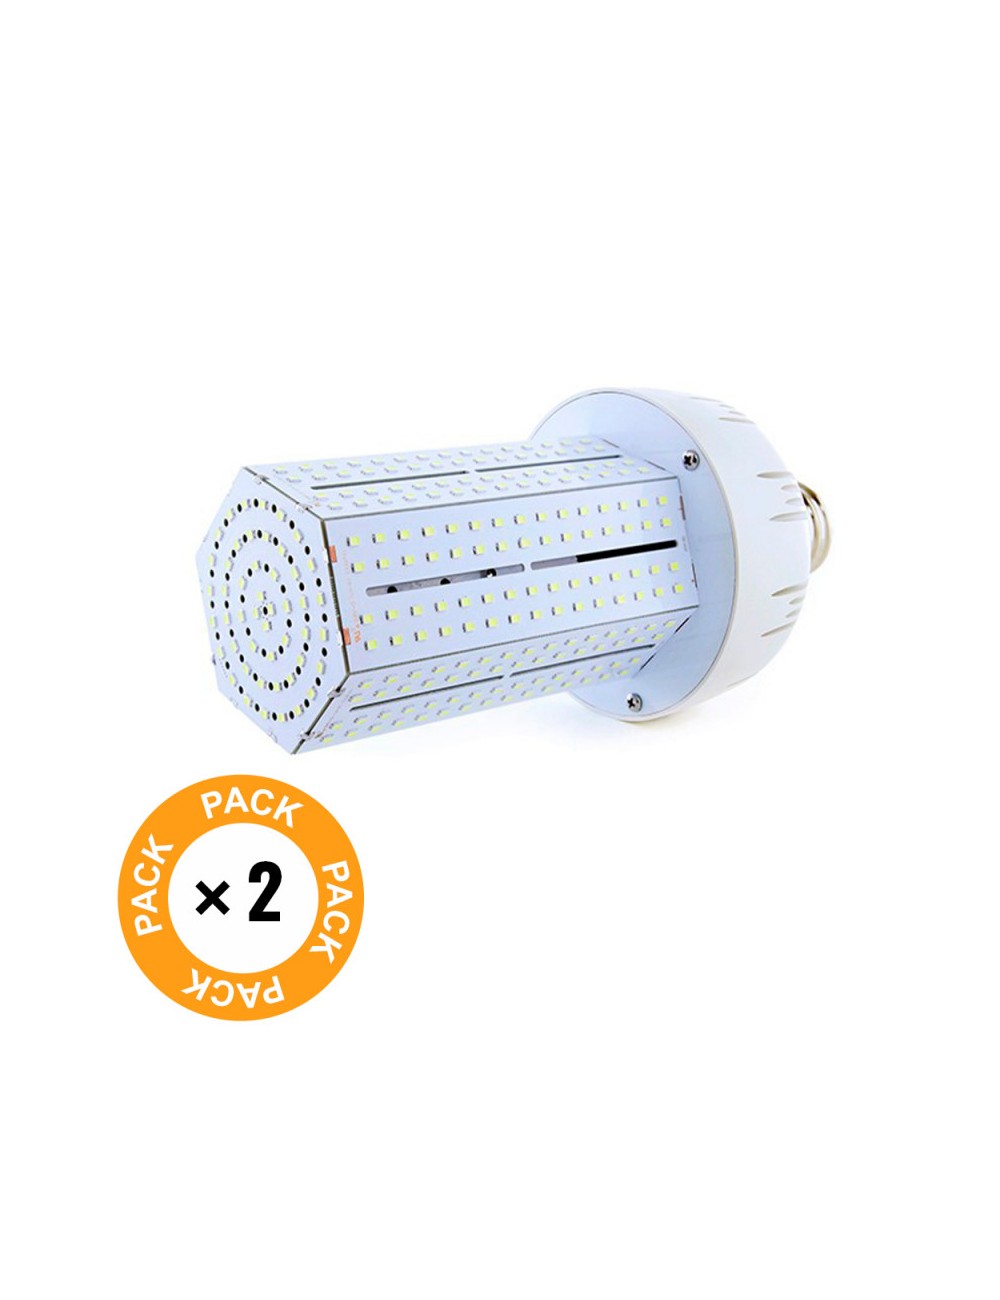 Pack 2 Ampoules LED E40 80W 8800Lm 6000ºK Eclairage Publique Público 40.000H [MYM-80-03-CW-PK2-AP]